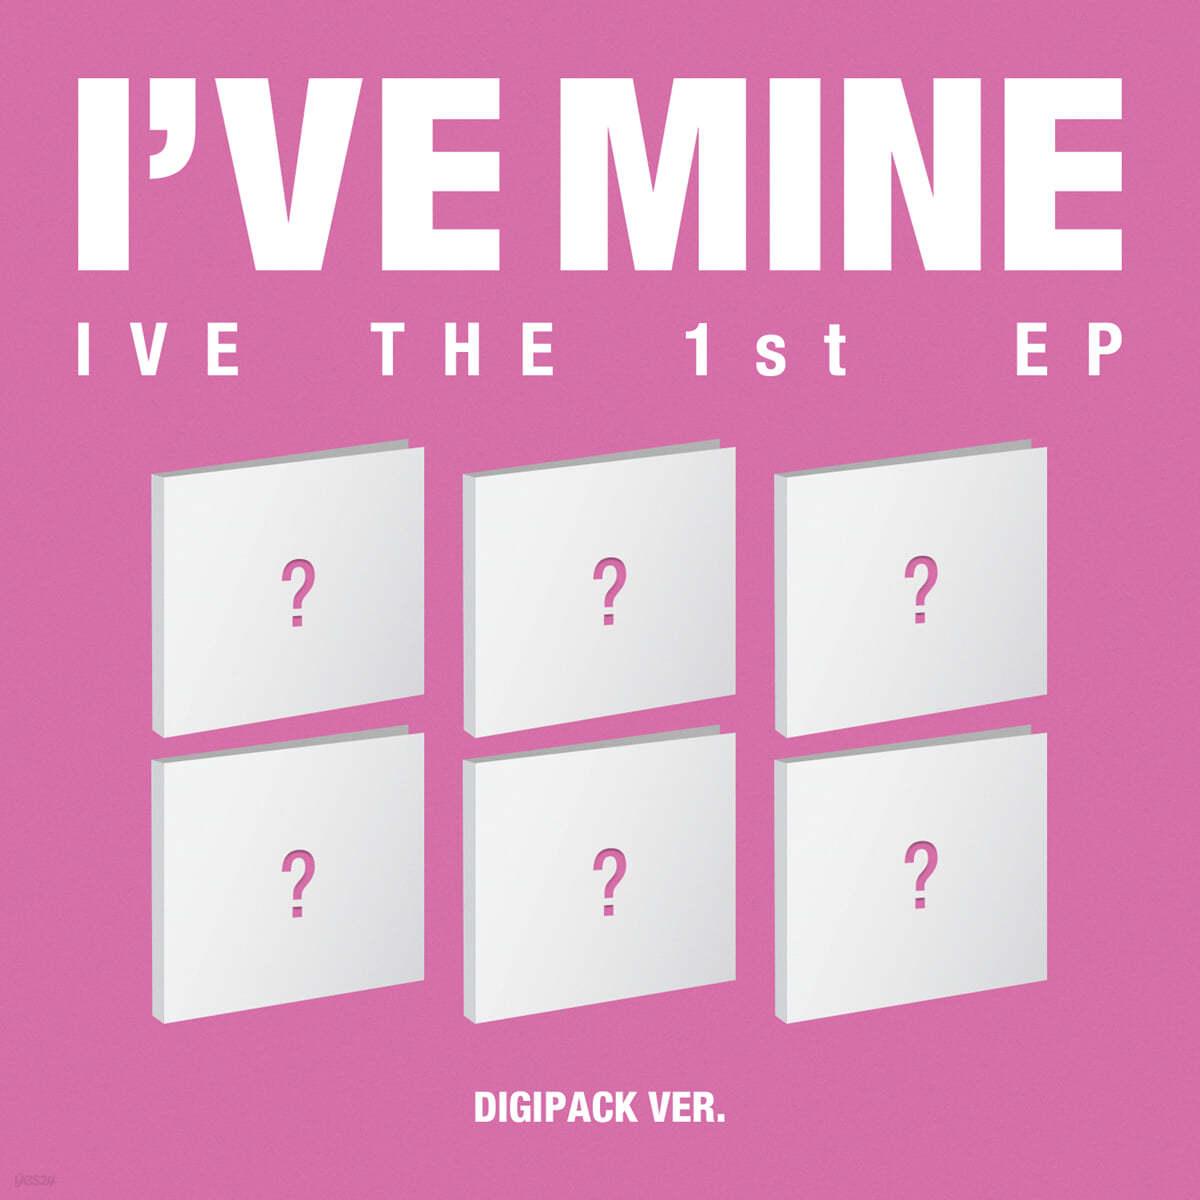 IVE 1st EP – I’VE MINE (Digipack Ver.) - KKANG